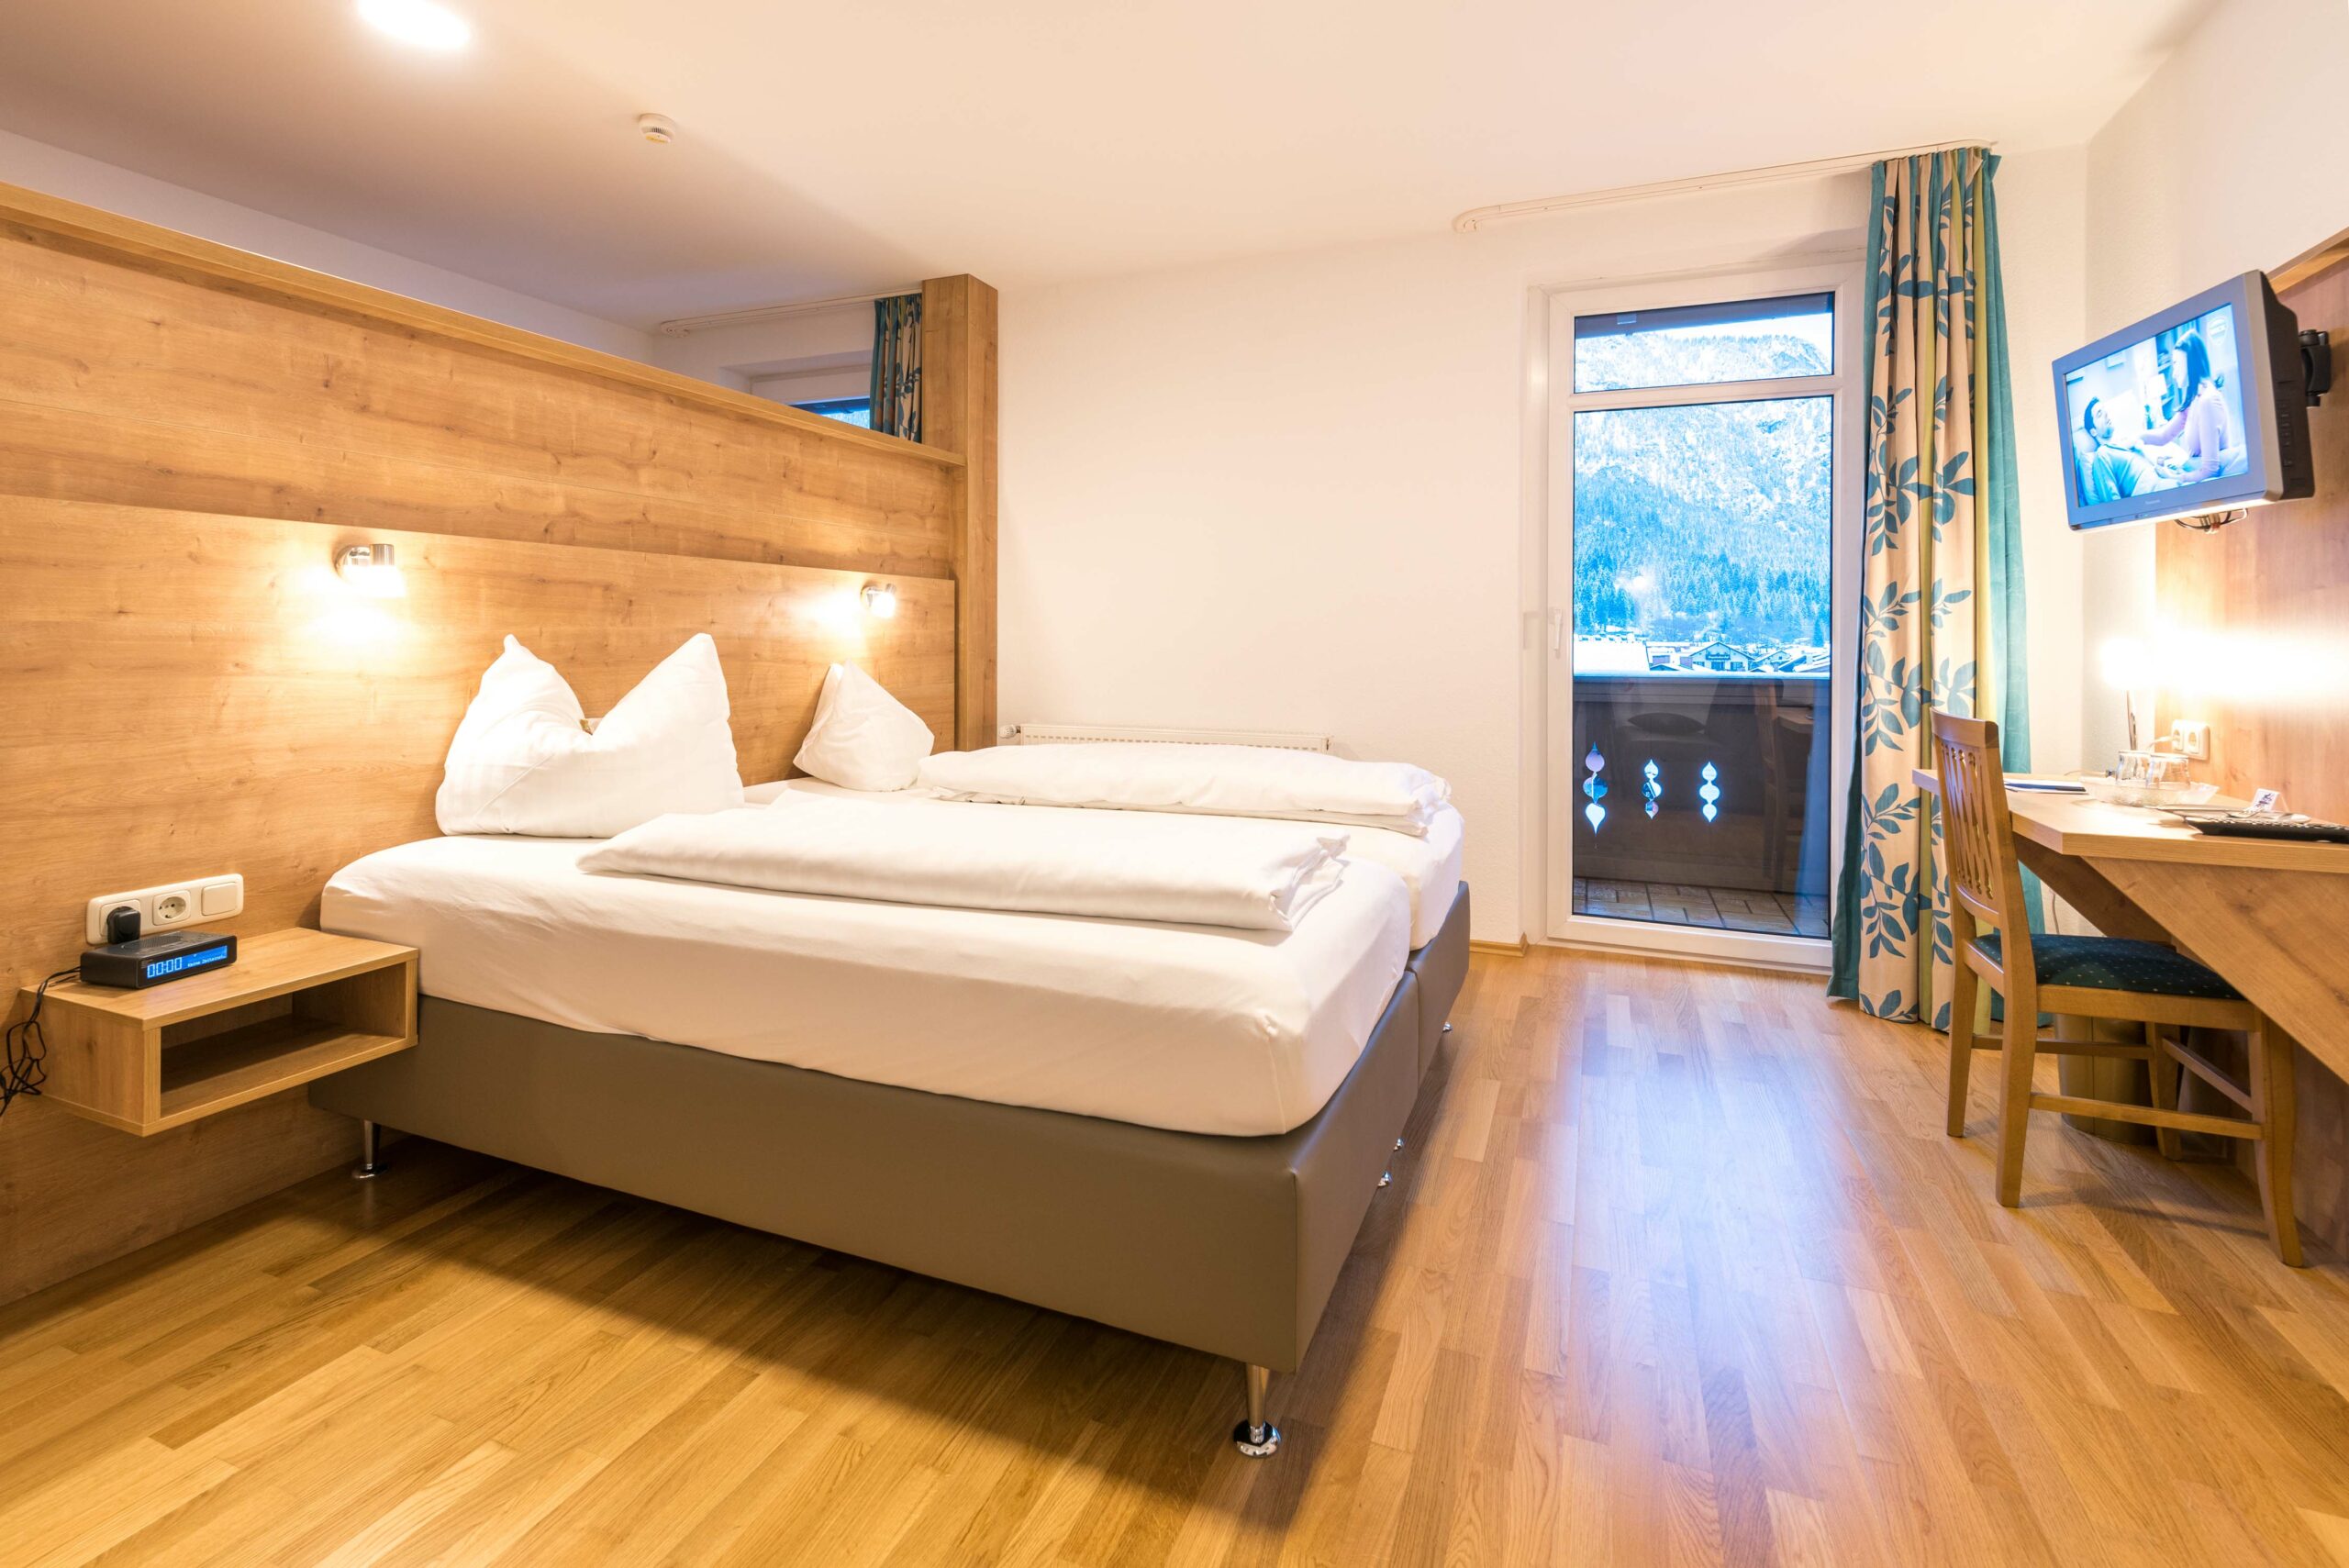 Gemütliches, modernes Zimmer im Hotel Garni Almenrausch und Edelweiß in Garmisch-Patenkirchen